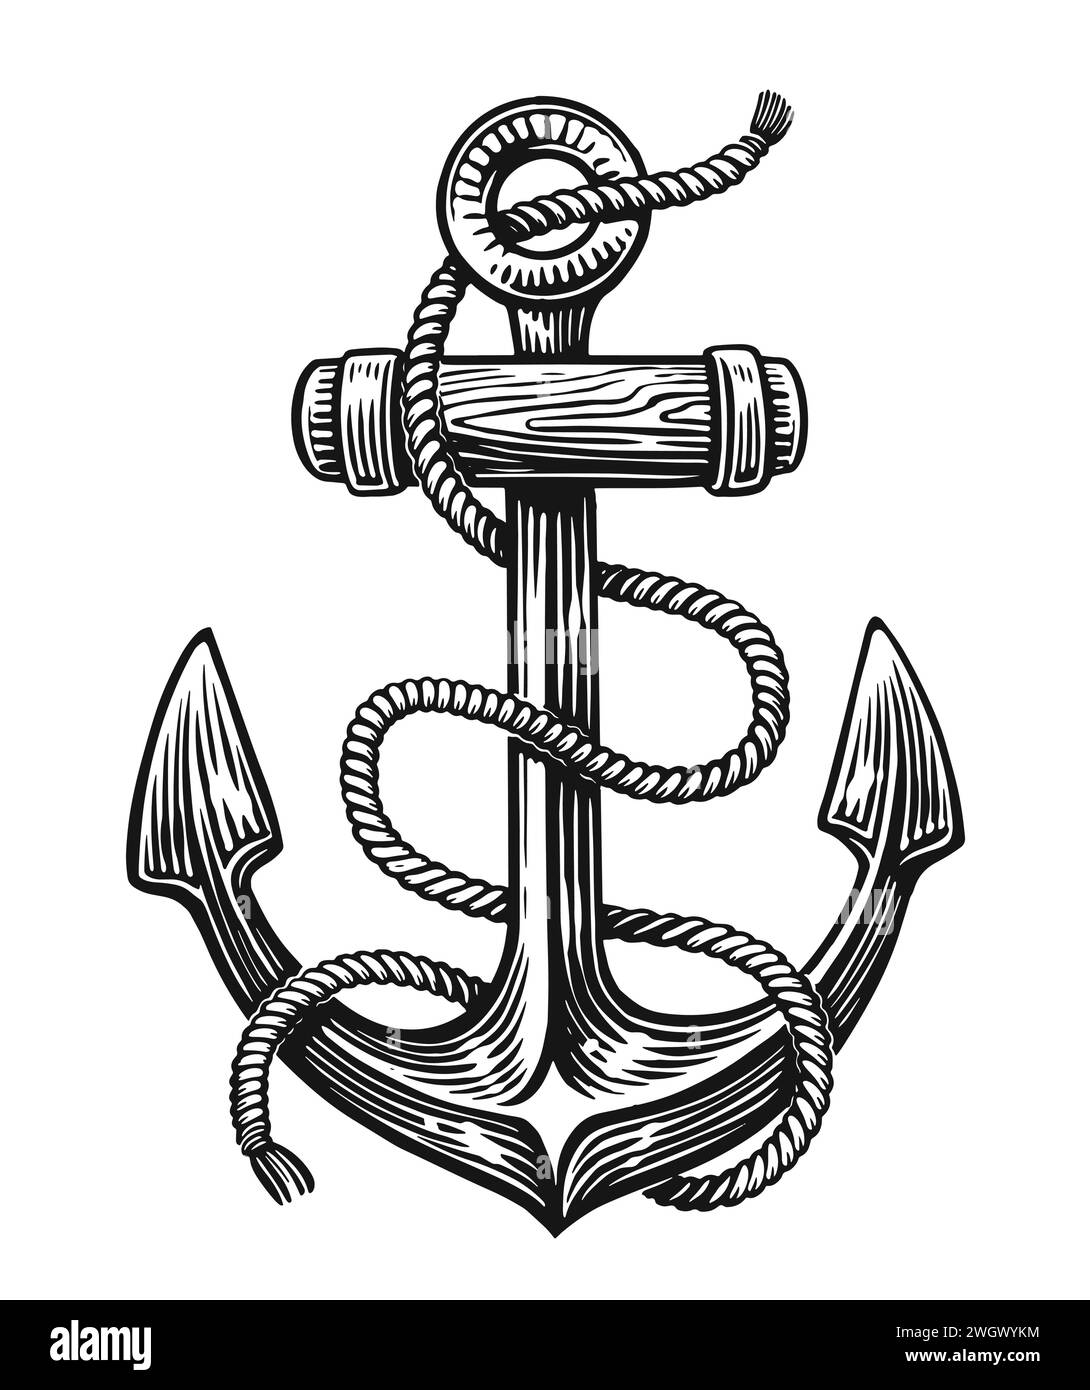 Handgezeichnetes Schiff Seeanker mit Seil. Skizzieren Sie Vintage-Vektor-Illustration Stock Vektor